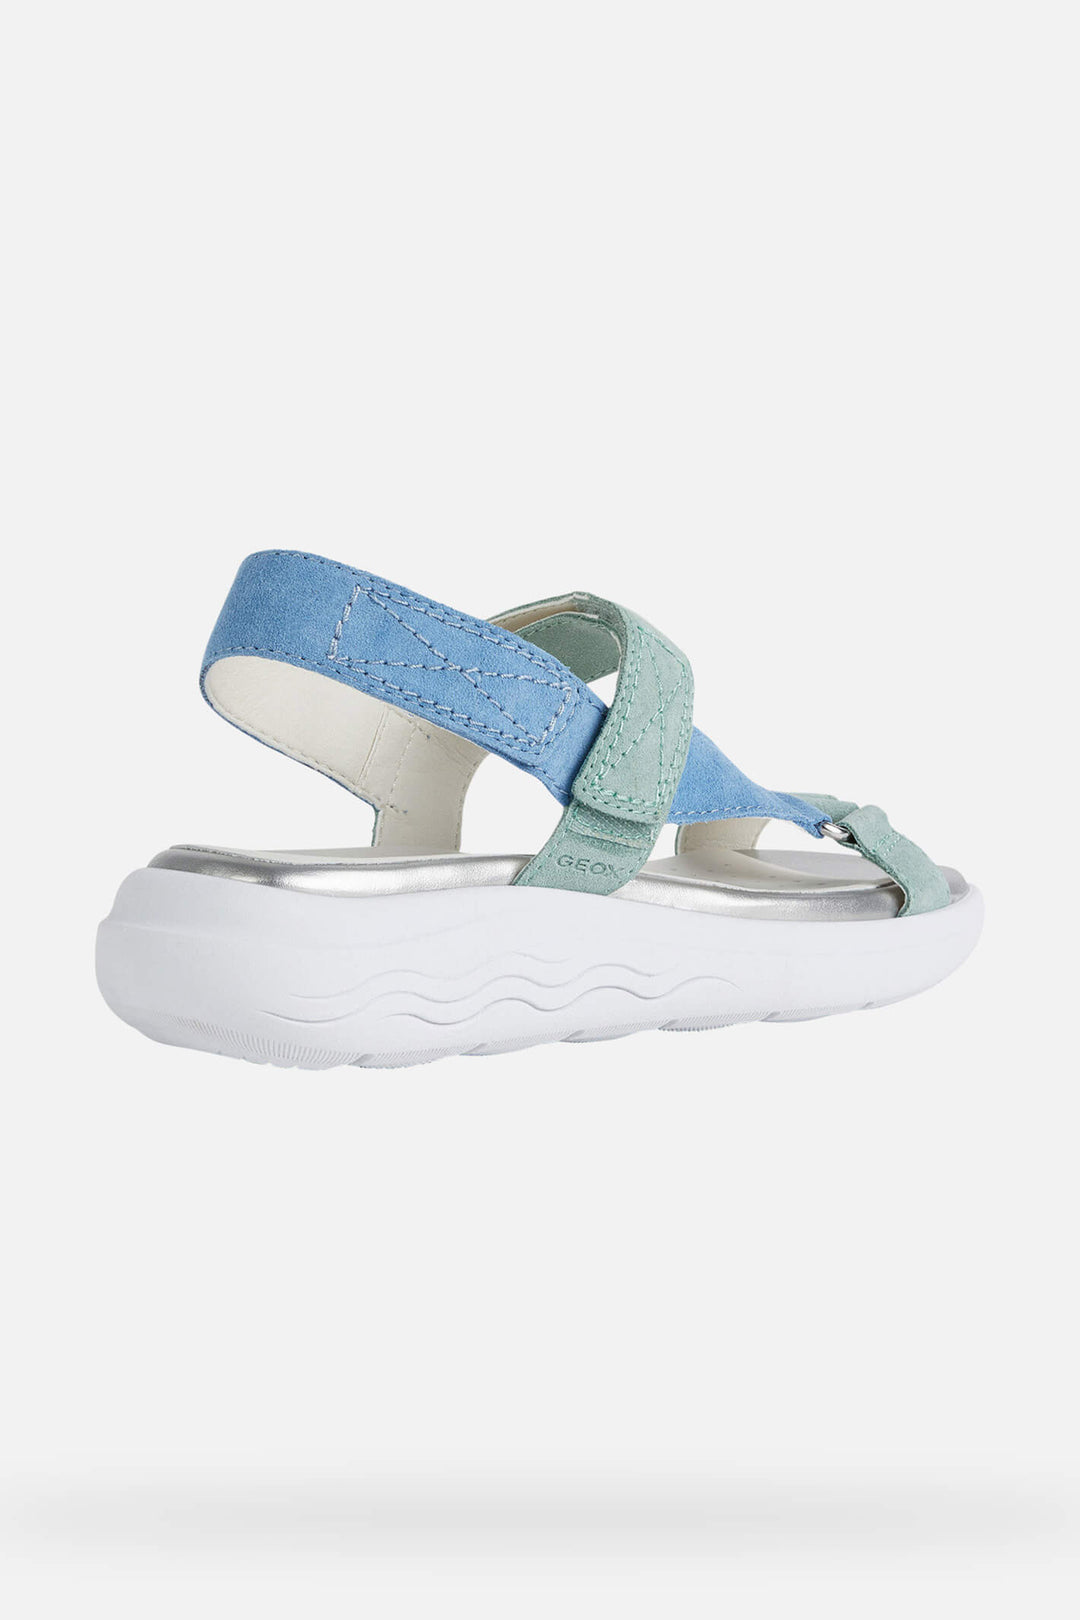 Geox Spherica D25ADA00022C4F4A Suede Blue Aqua Sandals - Shirley Allum Boutique